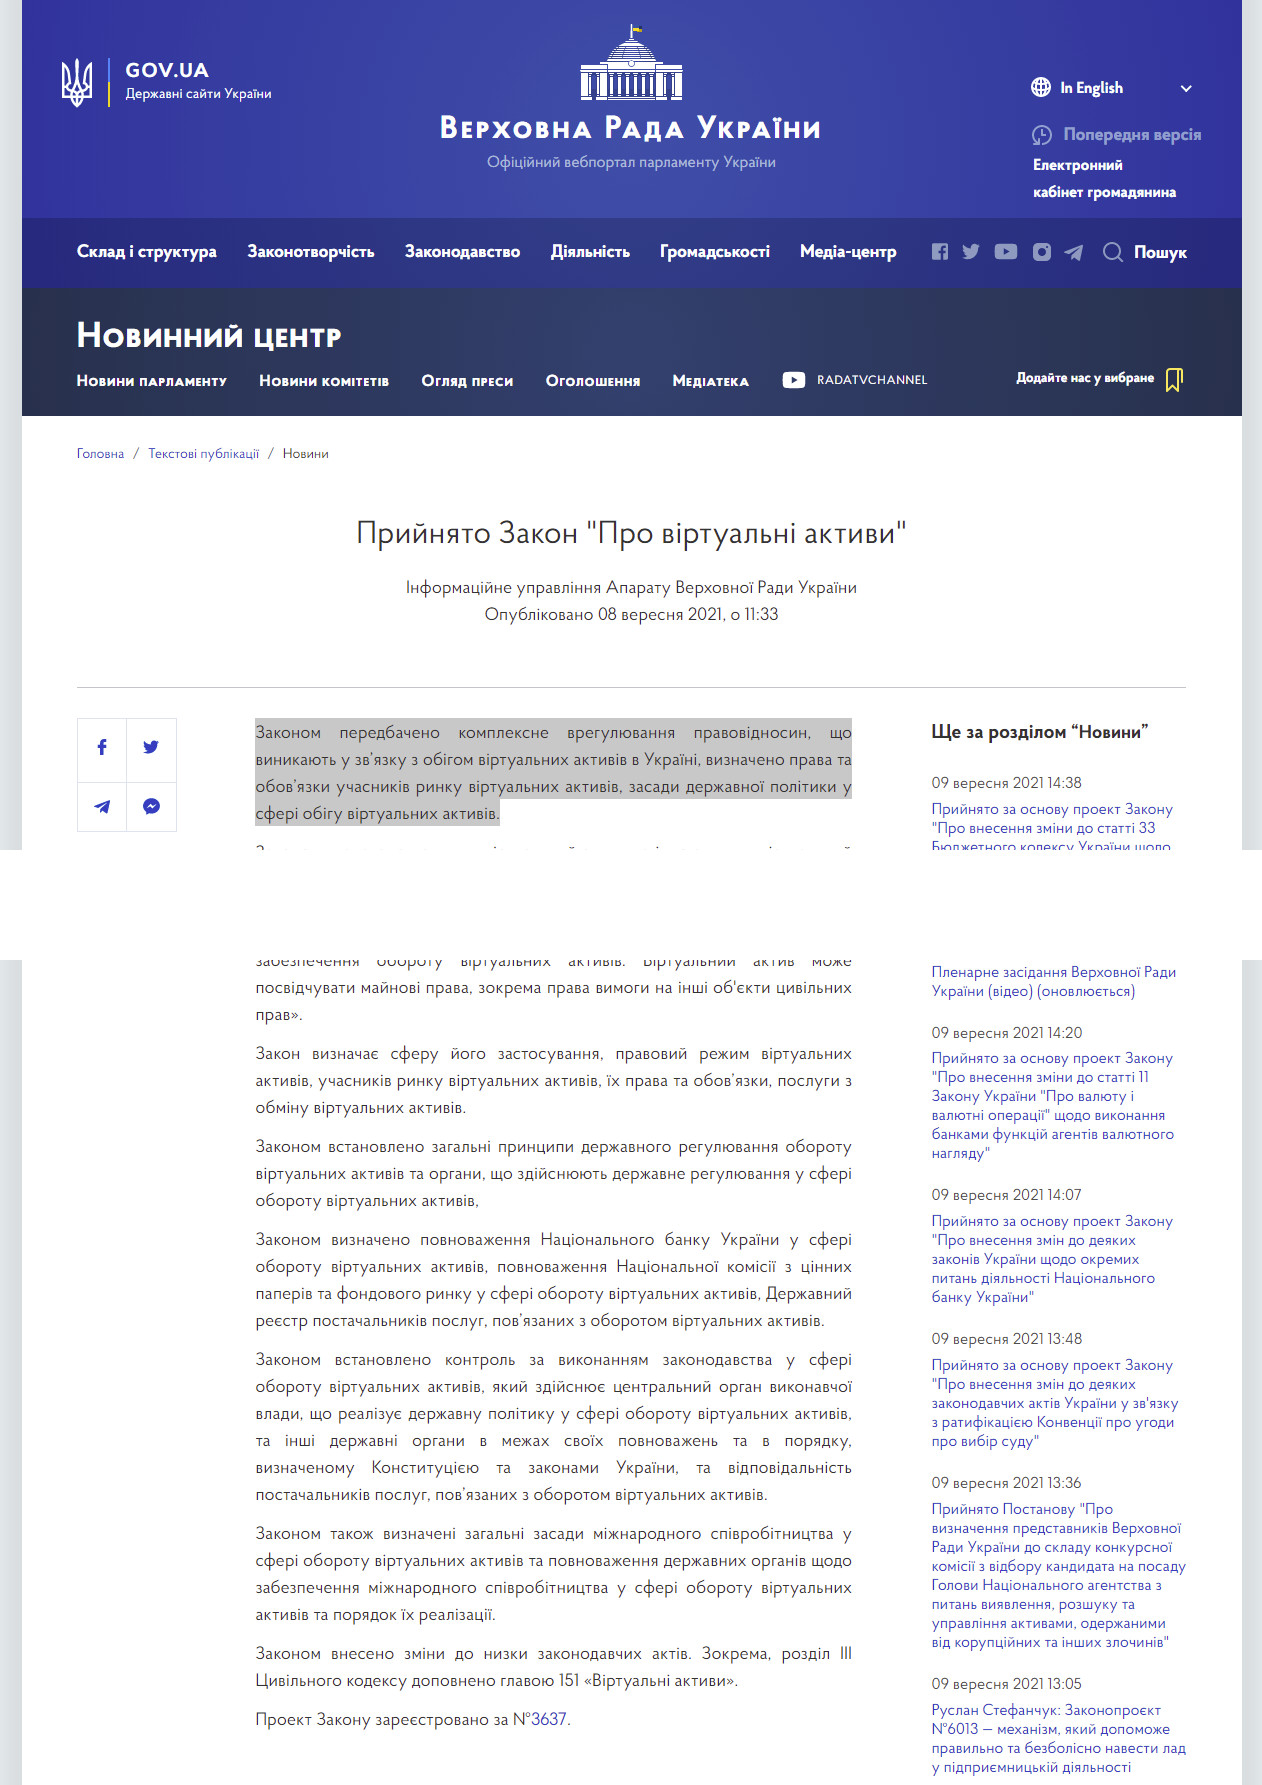 https://www.rada.gov.ua/news/Novyny/213503.html